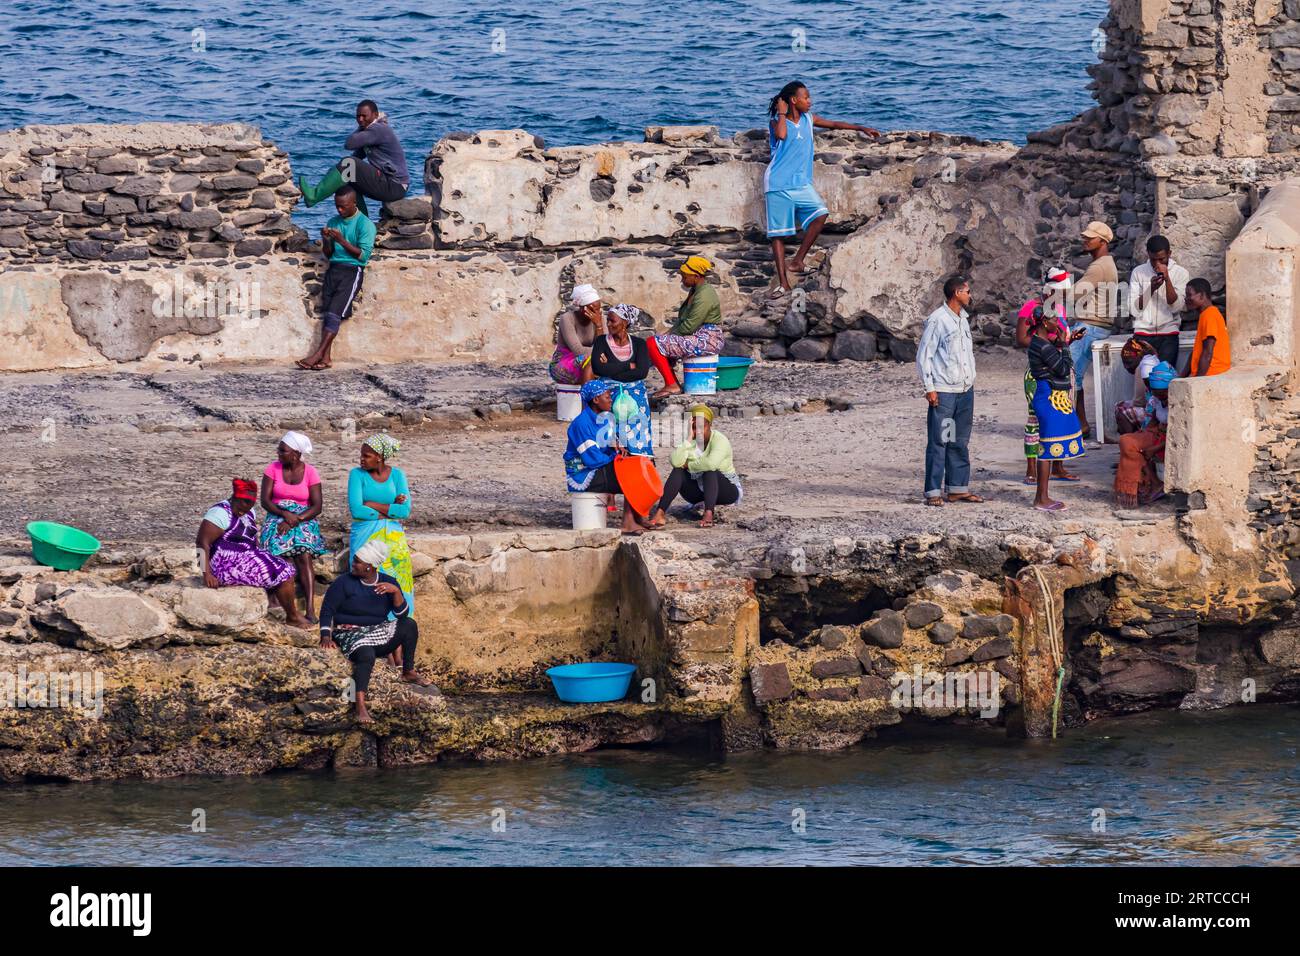 Donne e uomini attendono l'arrivo di un peschereccio al porto improvvisato, le isole di Capo Verde Foto Stock